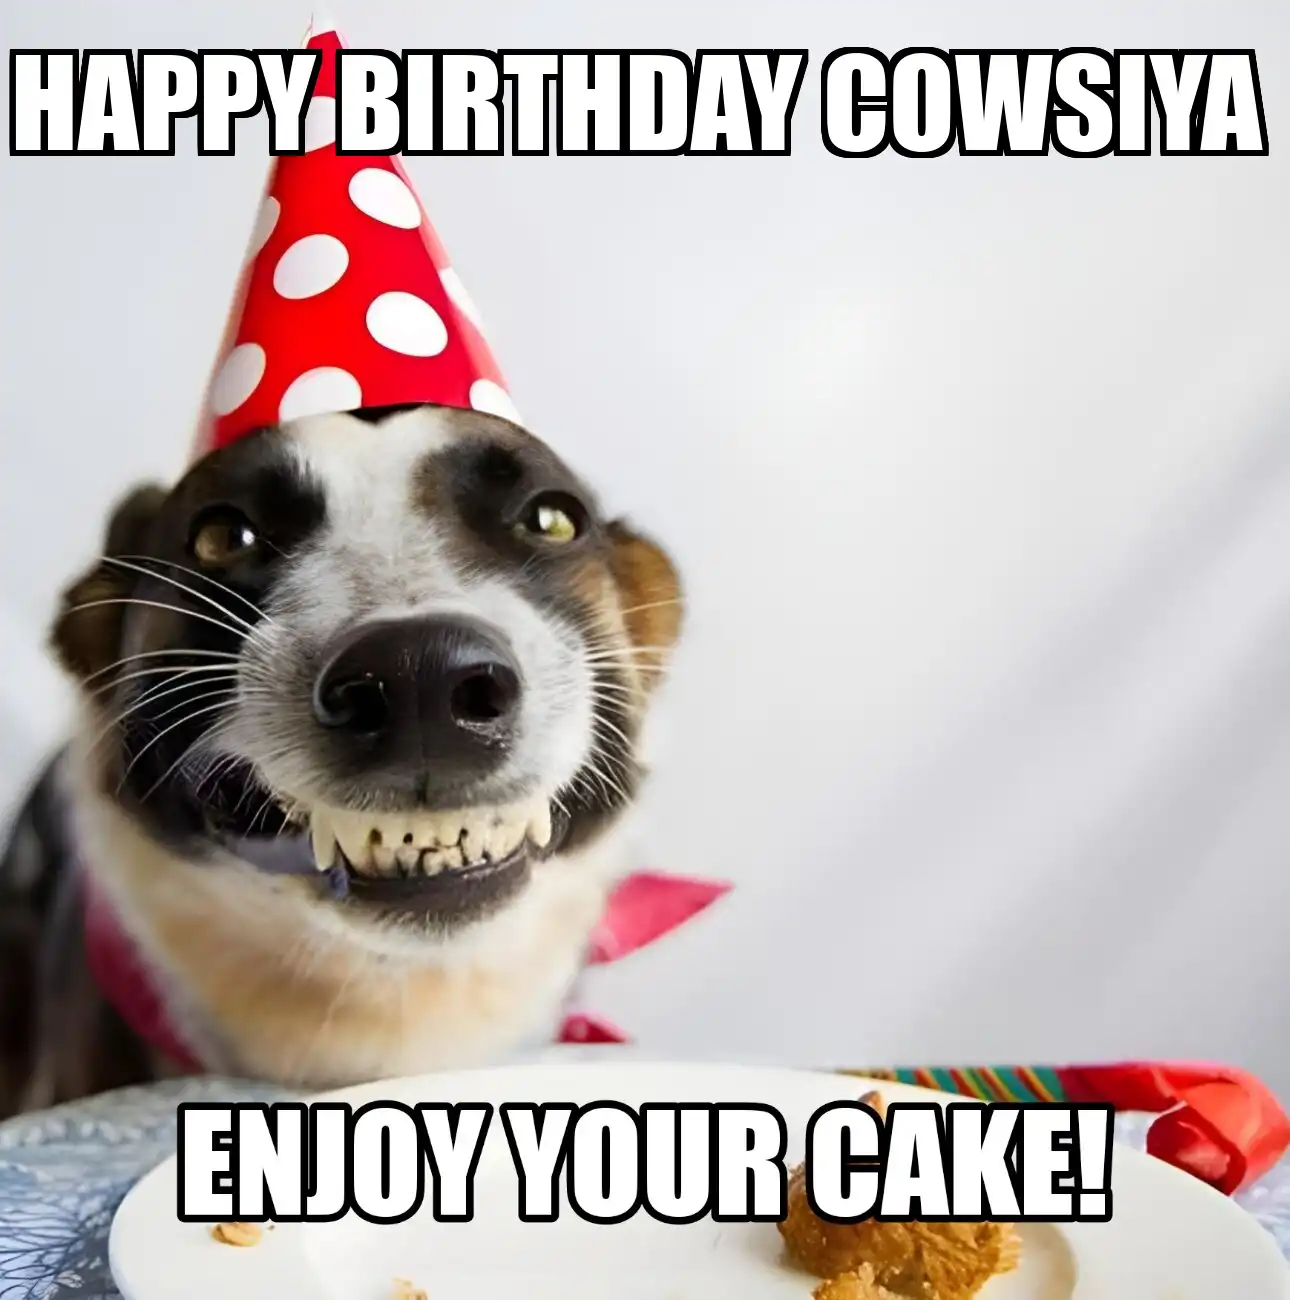 Happy Birthday Cowsiya Enjoy Your Cake Dog Meme